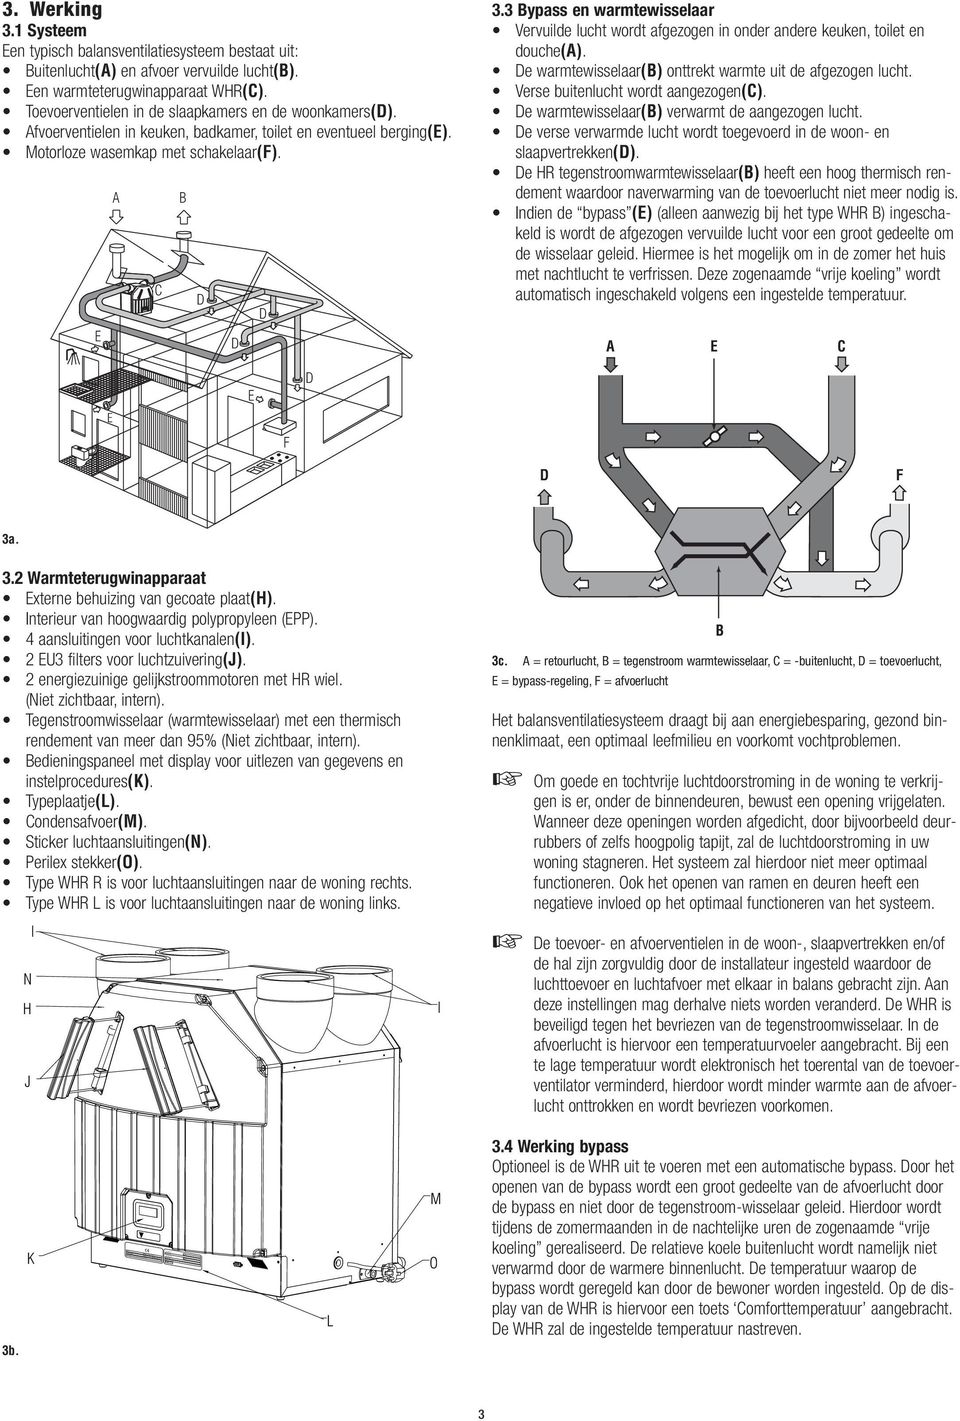 Afvoerventielen in keuken, badkamer, toilet en eventueel berging(e). Motorloze wasemkap met schakelaar(f). E A C 3.